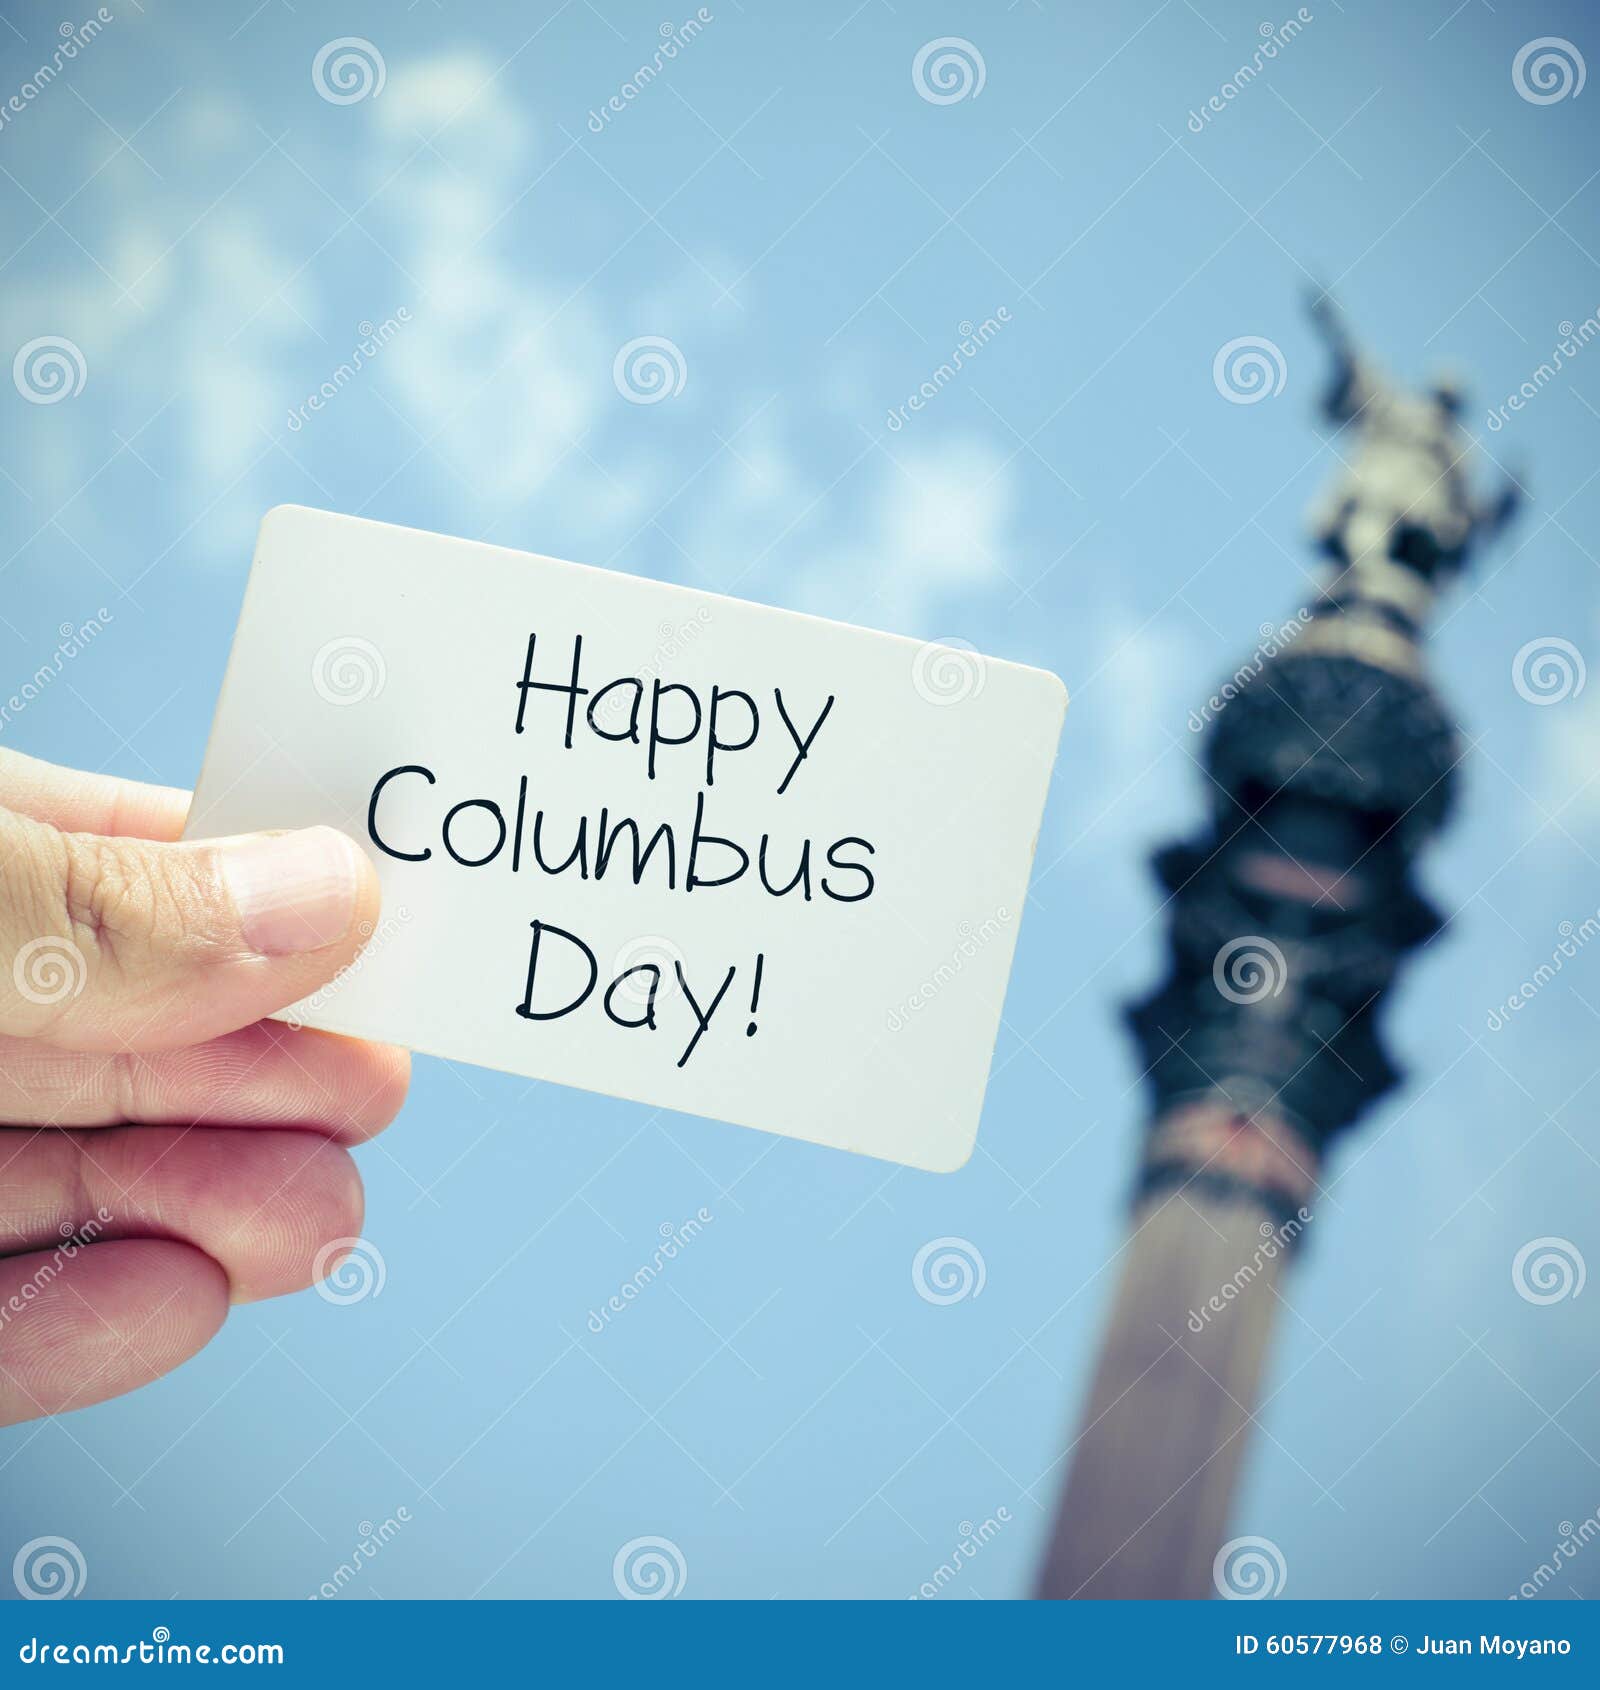 text happy columbus day